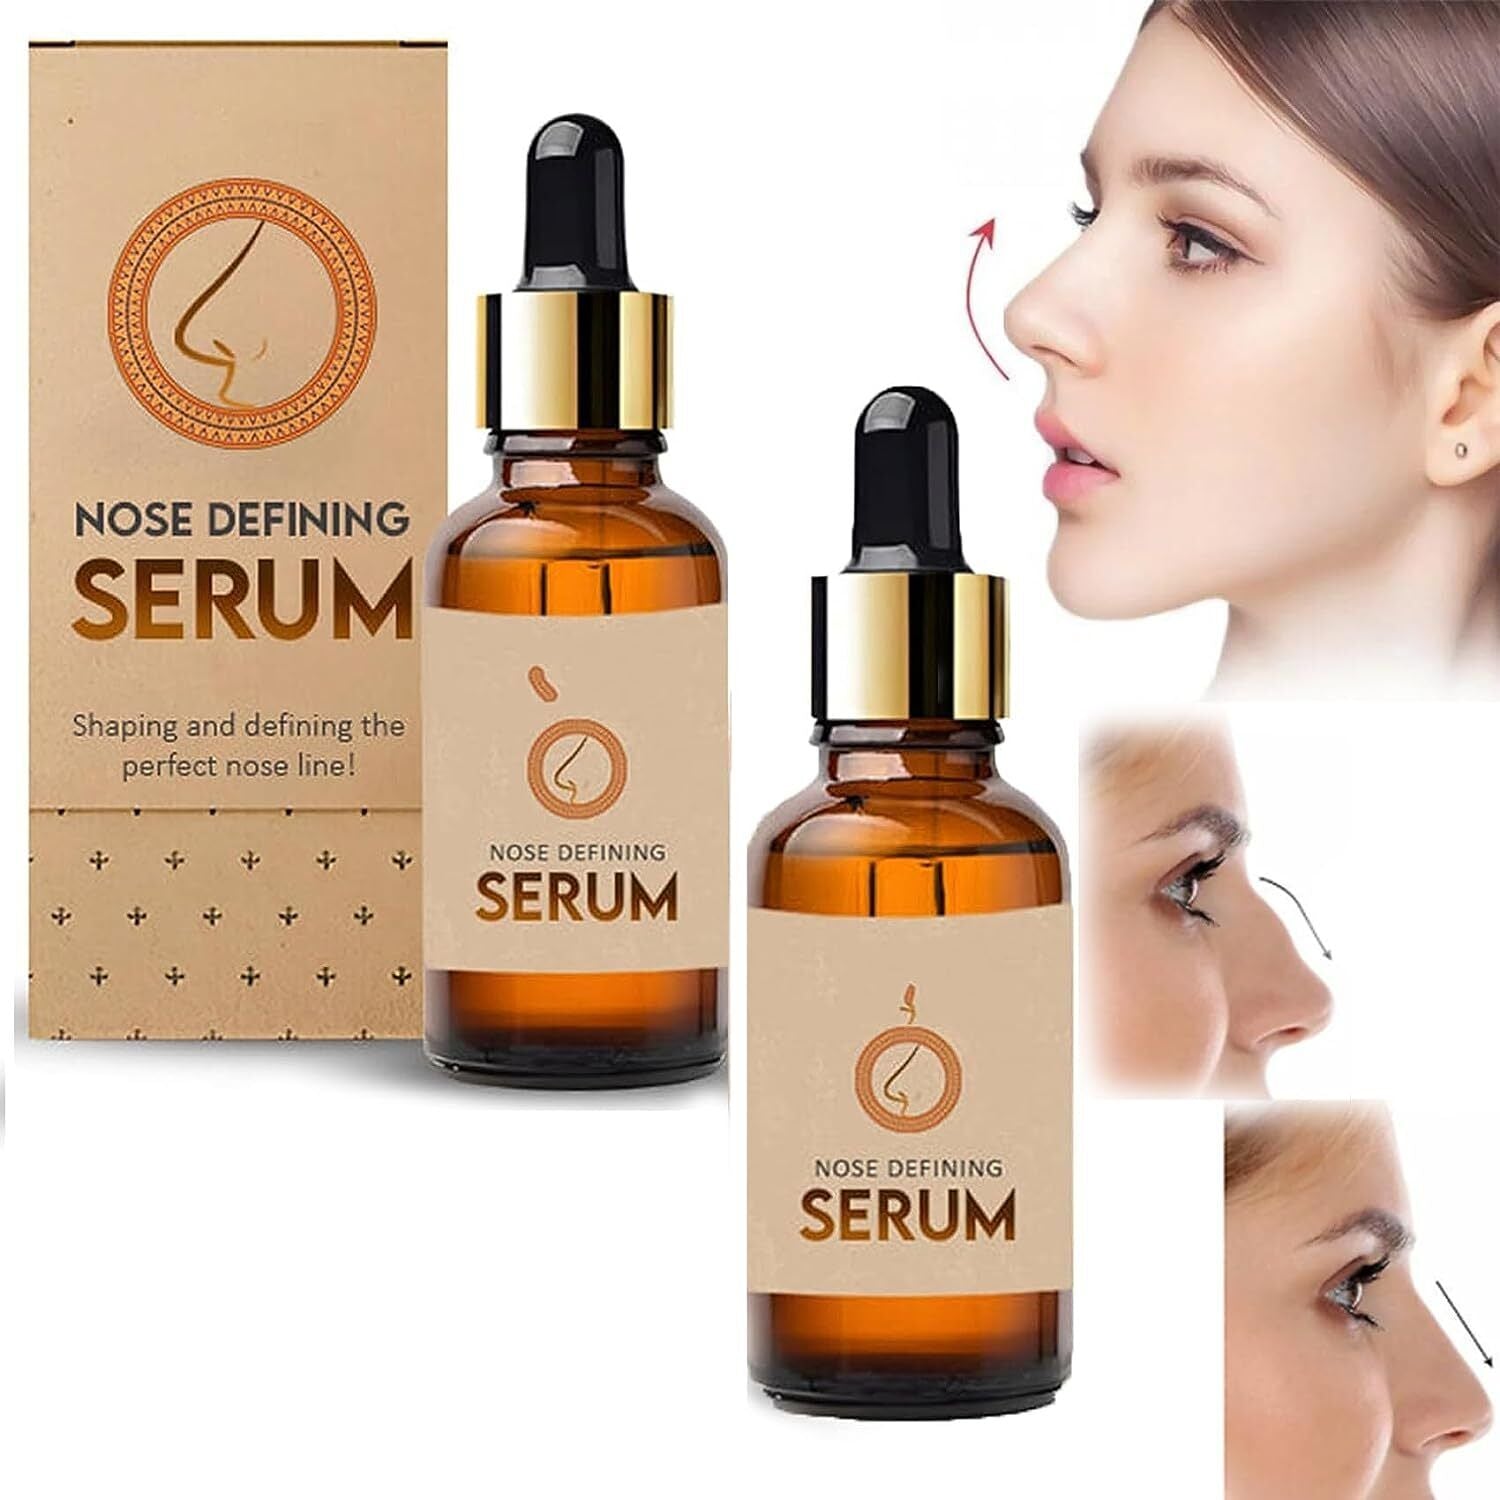 Nose Defining Serum